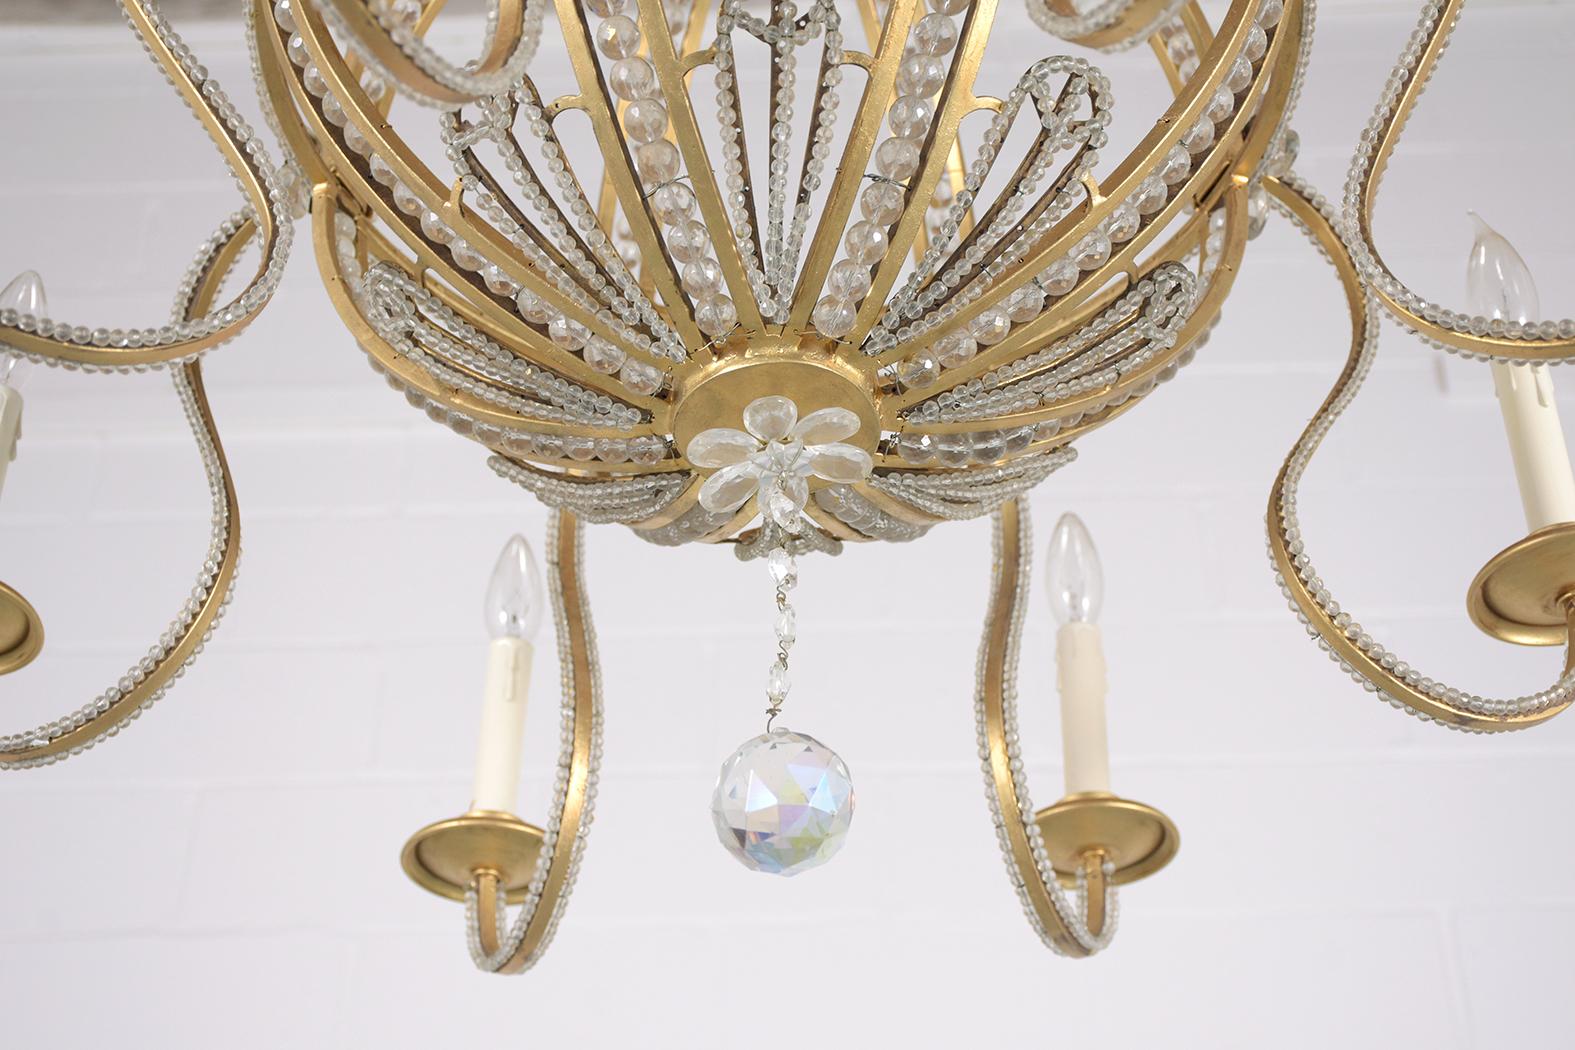 Restored 1910s Vintage Brass Crystal Hollywood Regency Chandelier For Sale 1